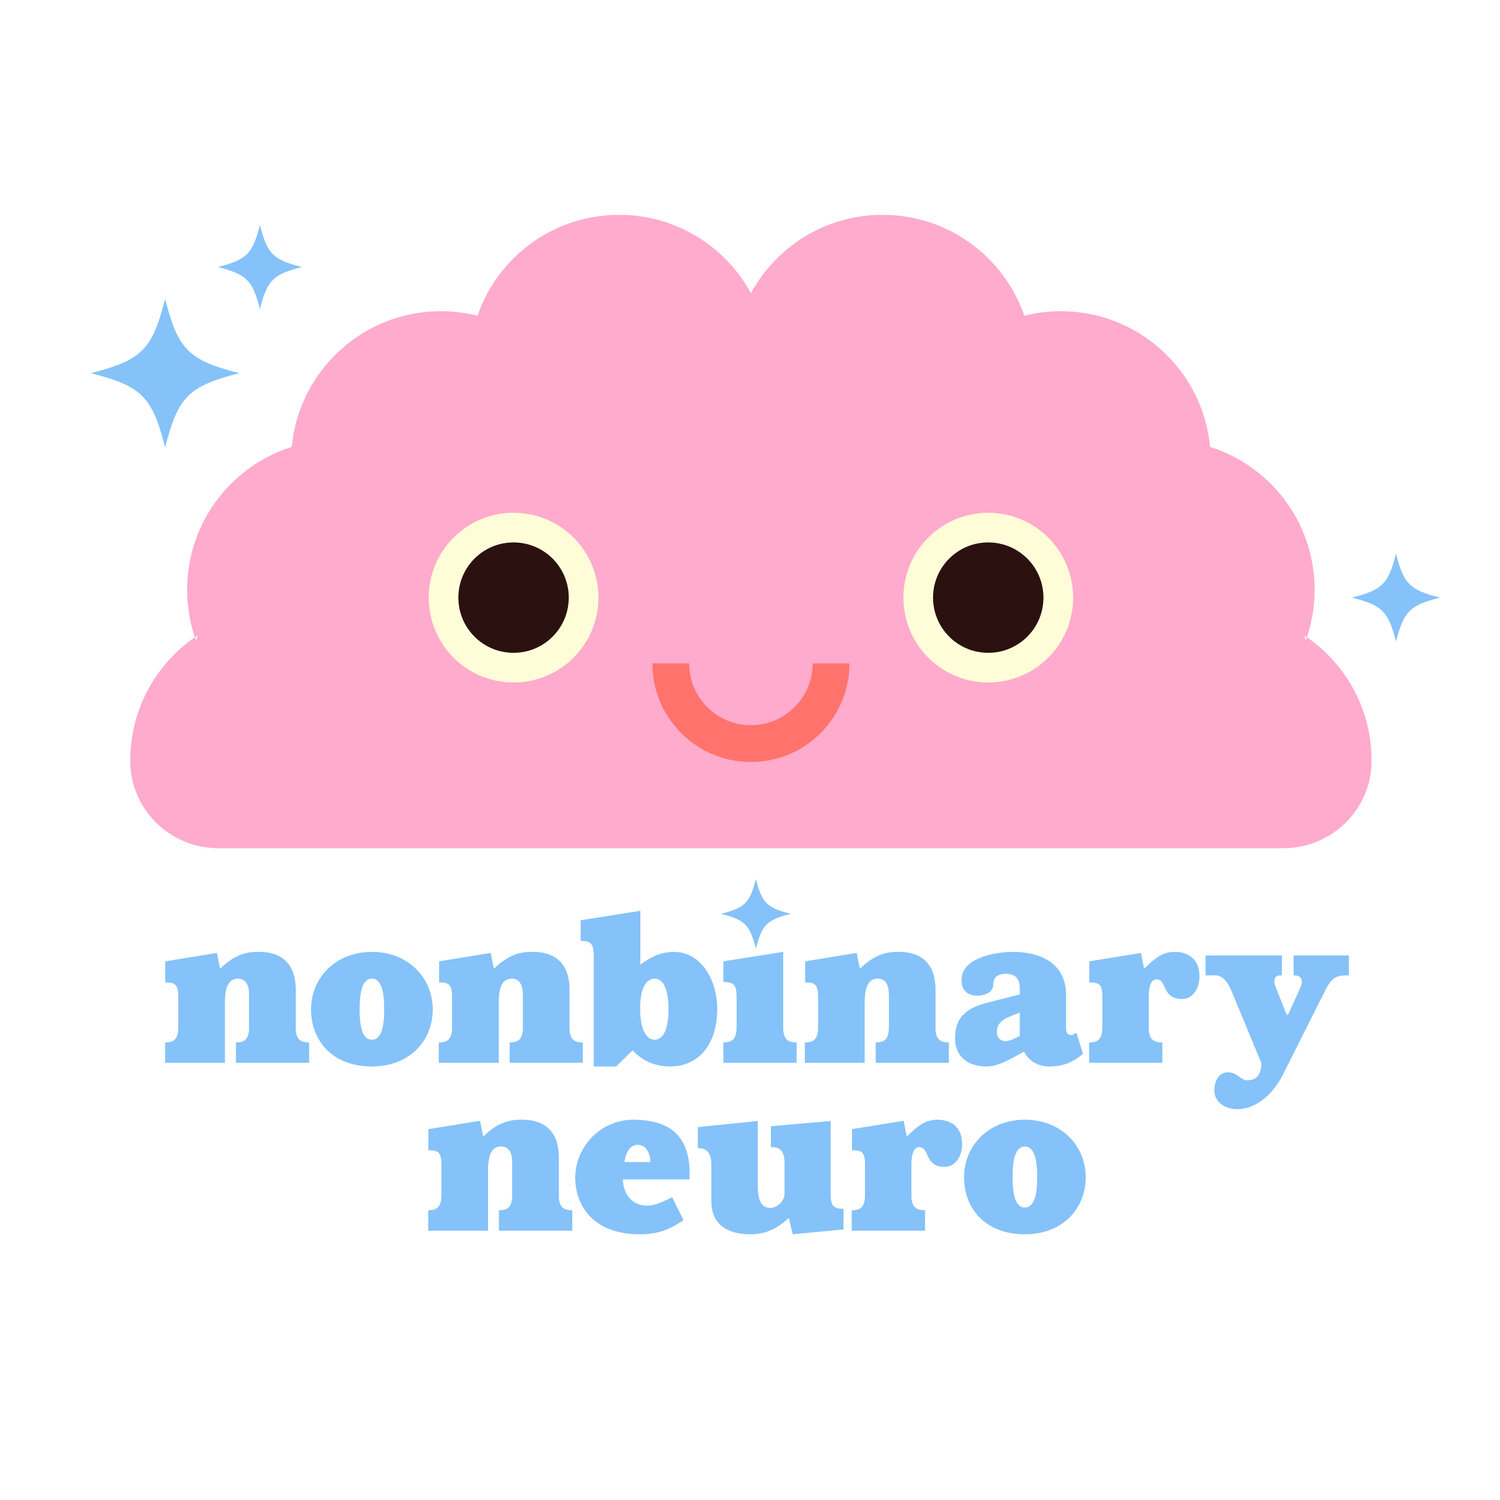 nonbinary neuro